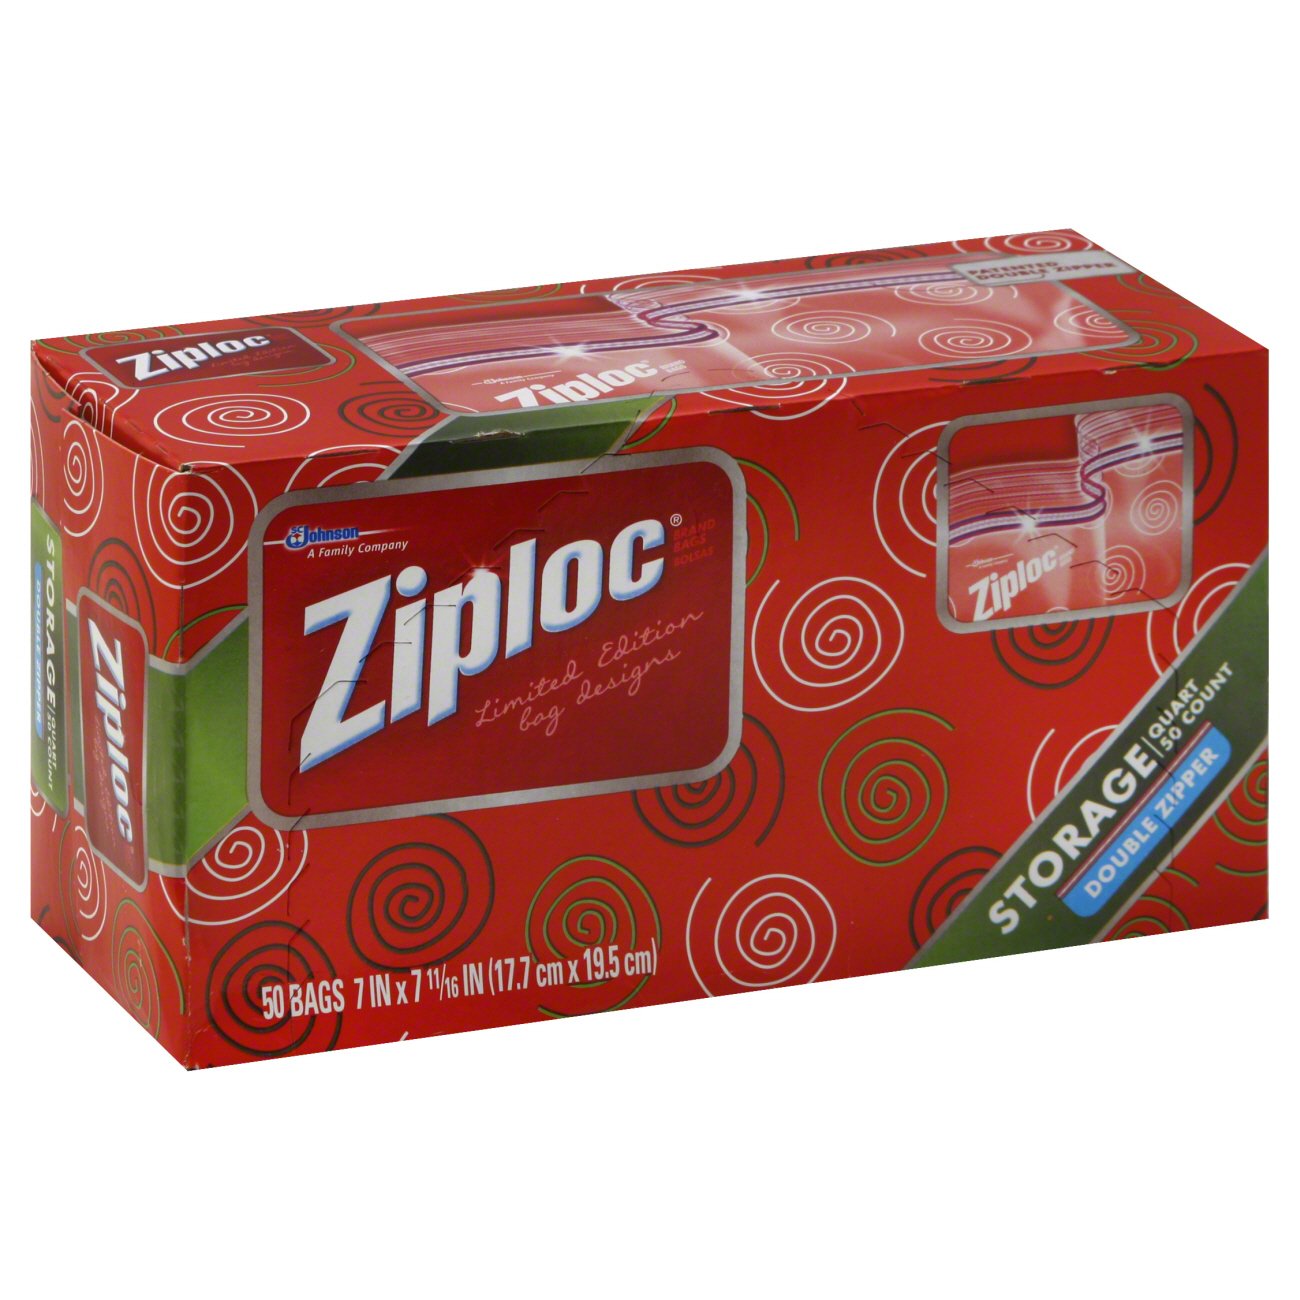 Ziploc Double Zipper Sandwich Bags - Shop Storage Bags at H-E-B